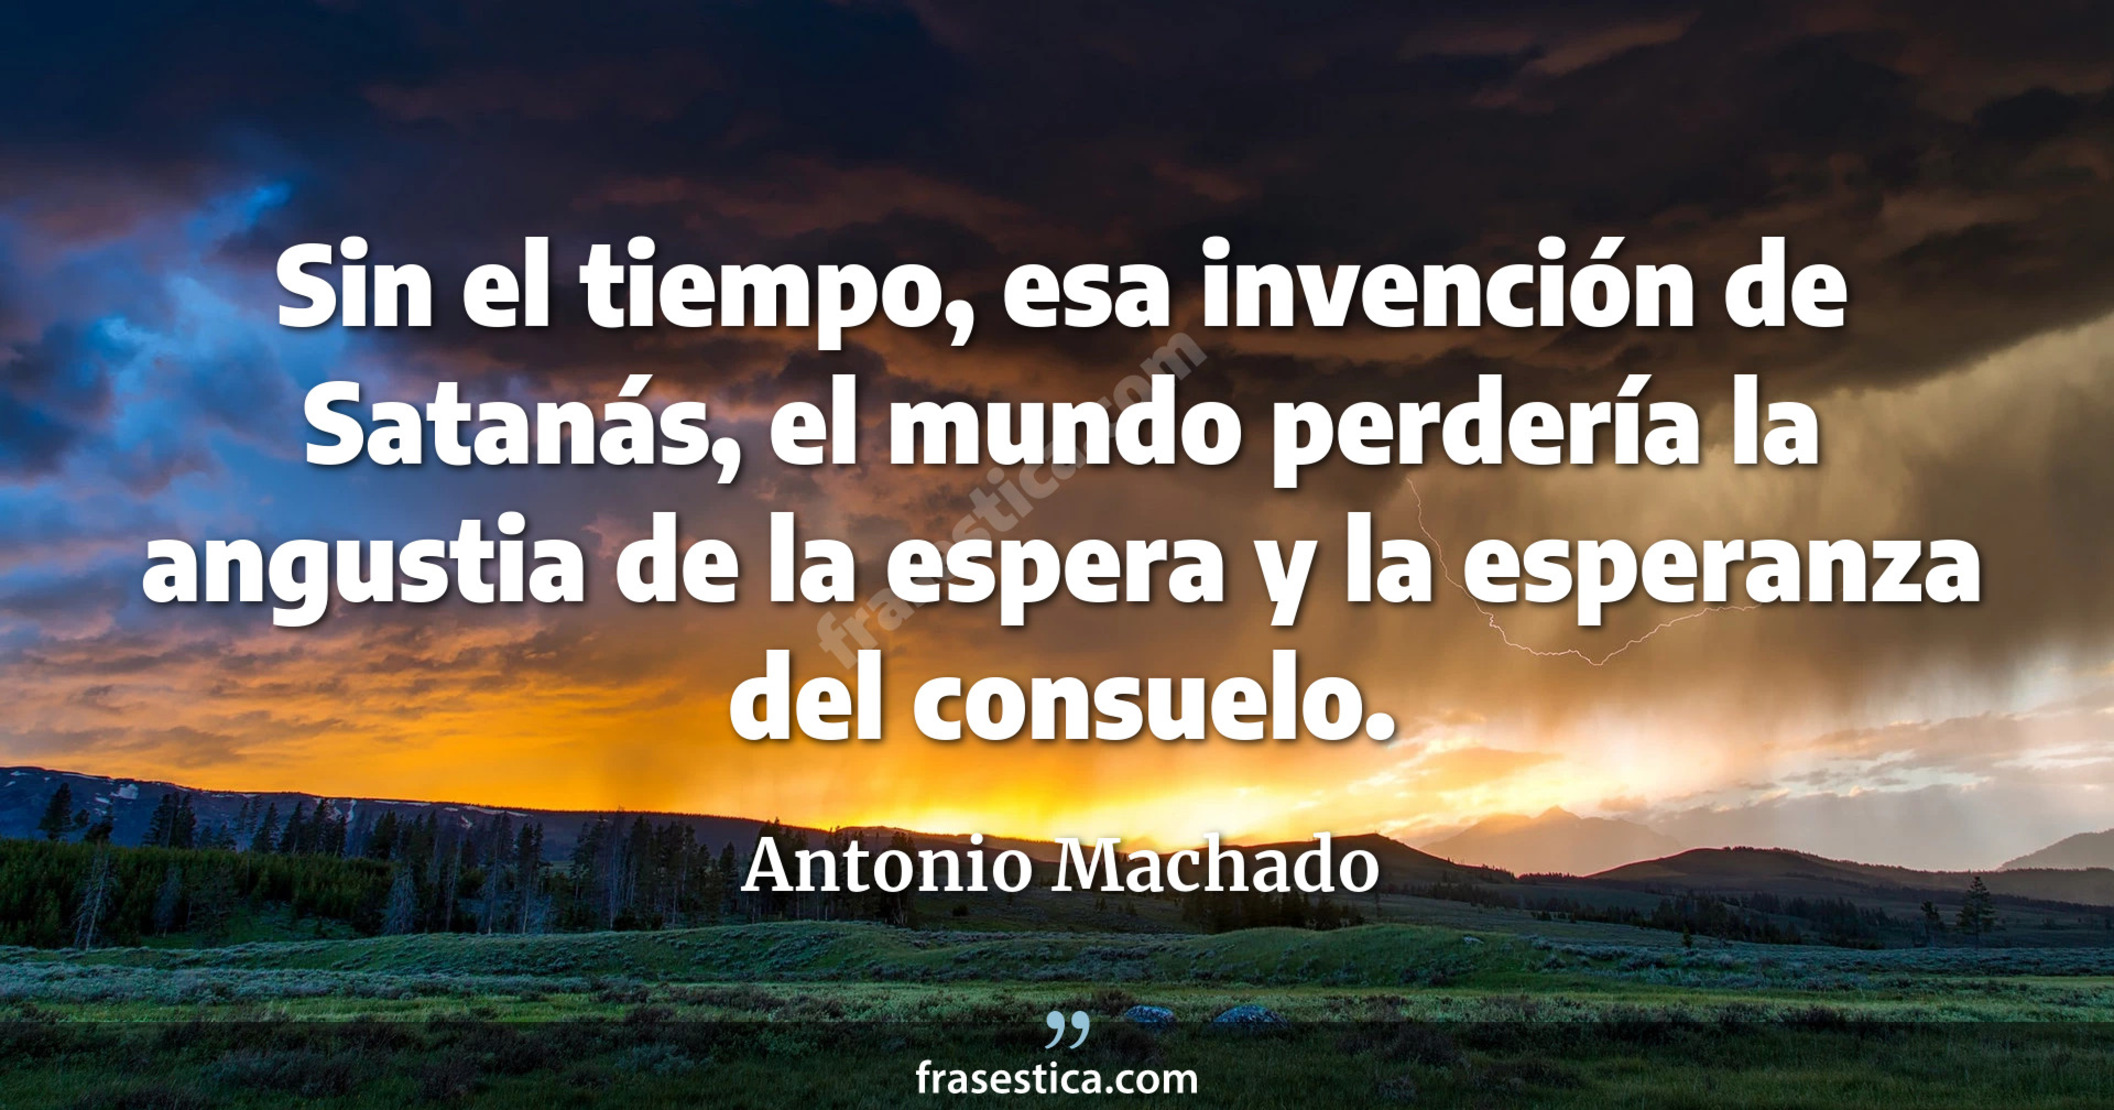 Sin el tiempo, esa invención de Satanás, el mundo perdería la angustia de la espera y la esperanza del consuelo. - Antonio Machado